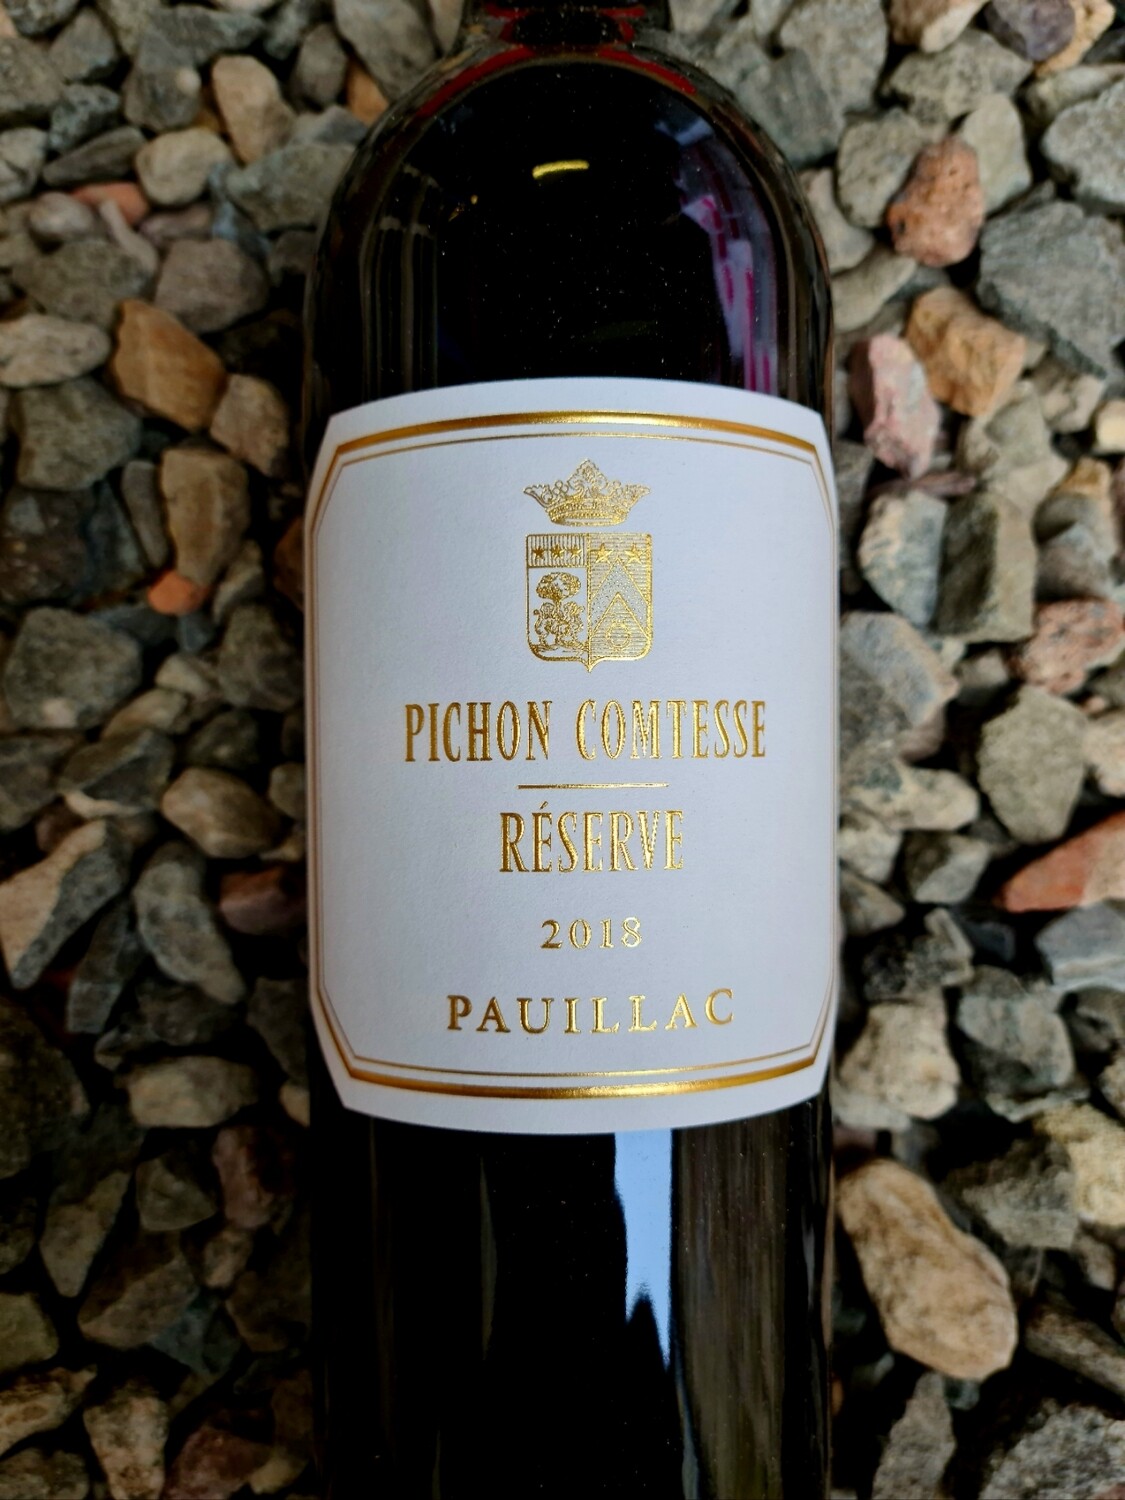 Pichon Comtesse Reserve 2018